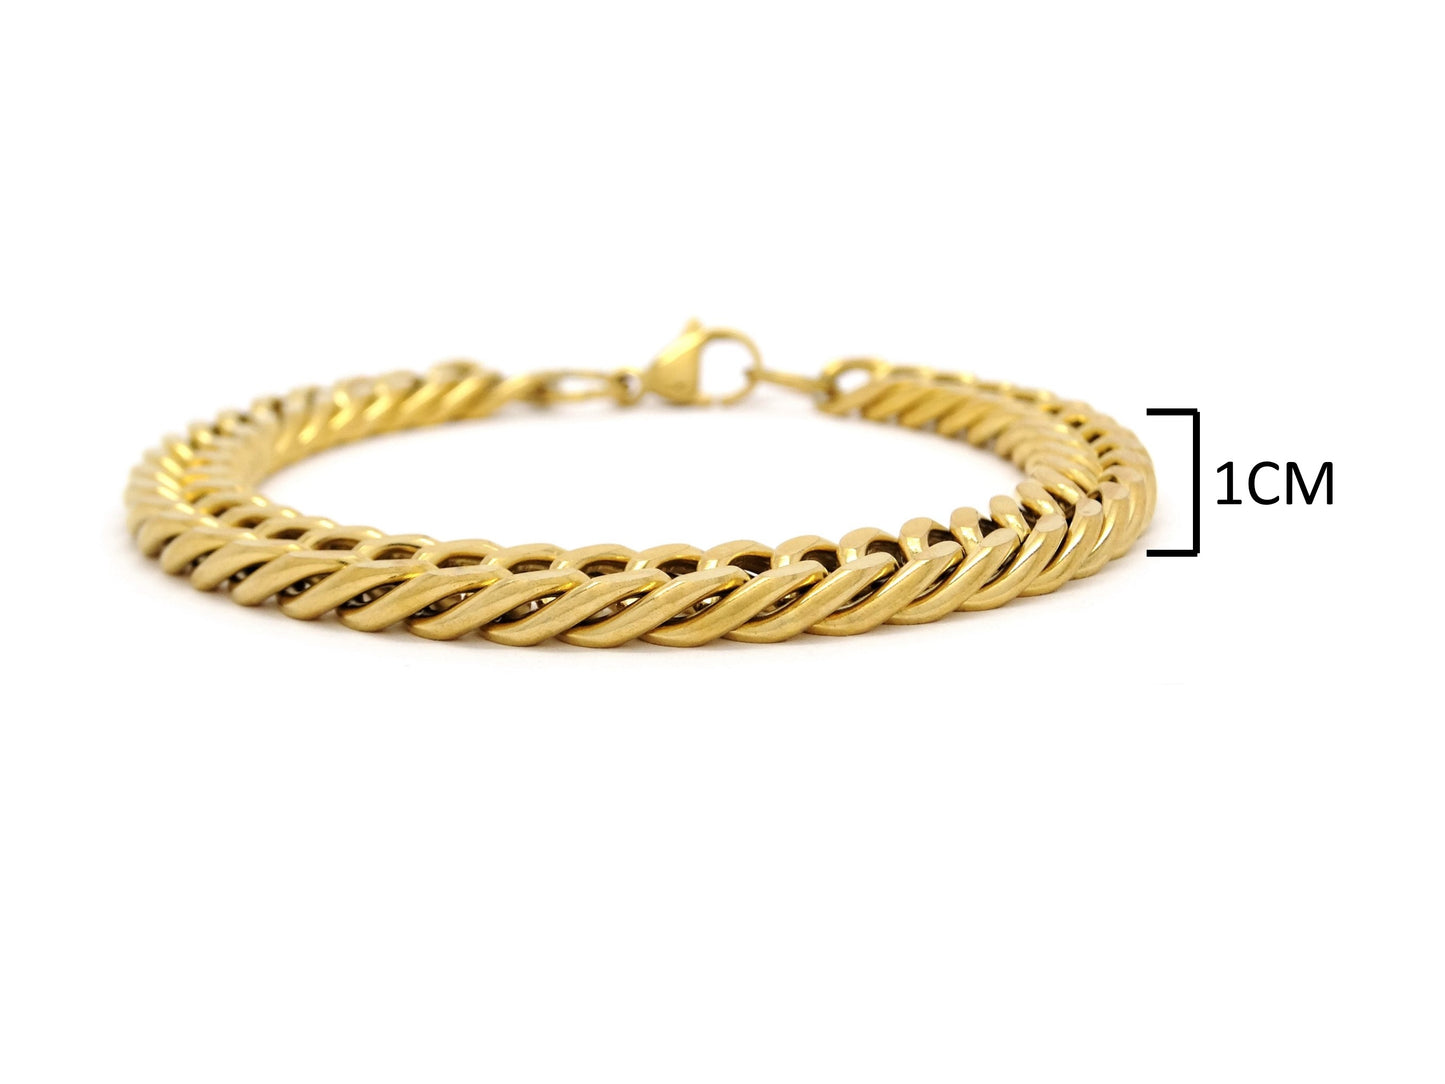 Gold double curb link chain bracelet MEASUREMENT